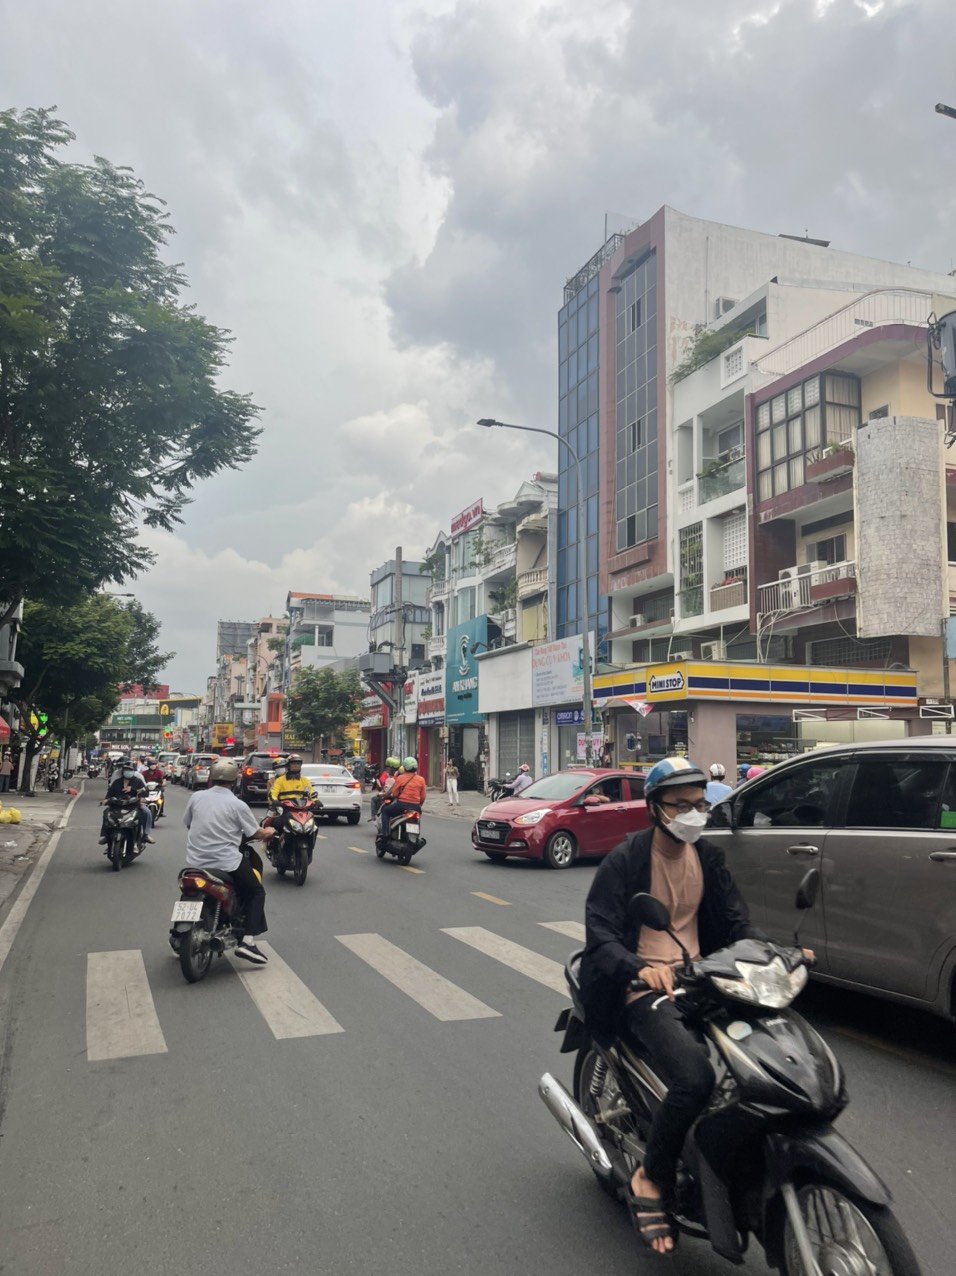 4 x 25m, bán nhà 2 mặt tiền đường Phan Đình Phùng - Phú Nhuận (hẻm sau ko lộ giới - giá 24 tỷ TL)